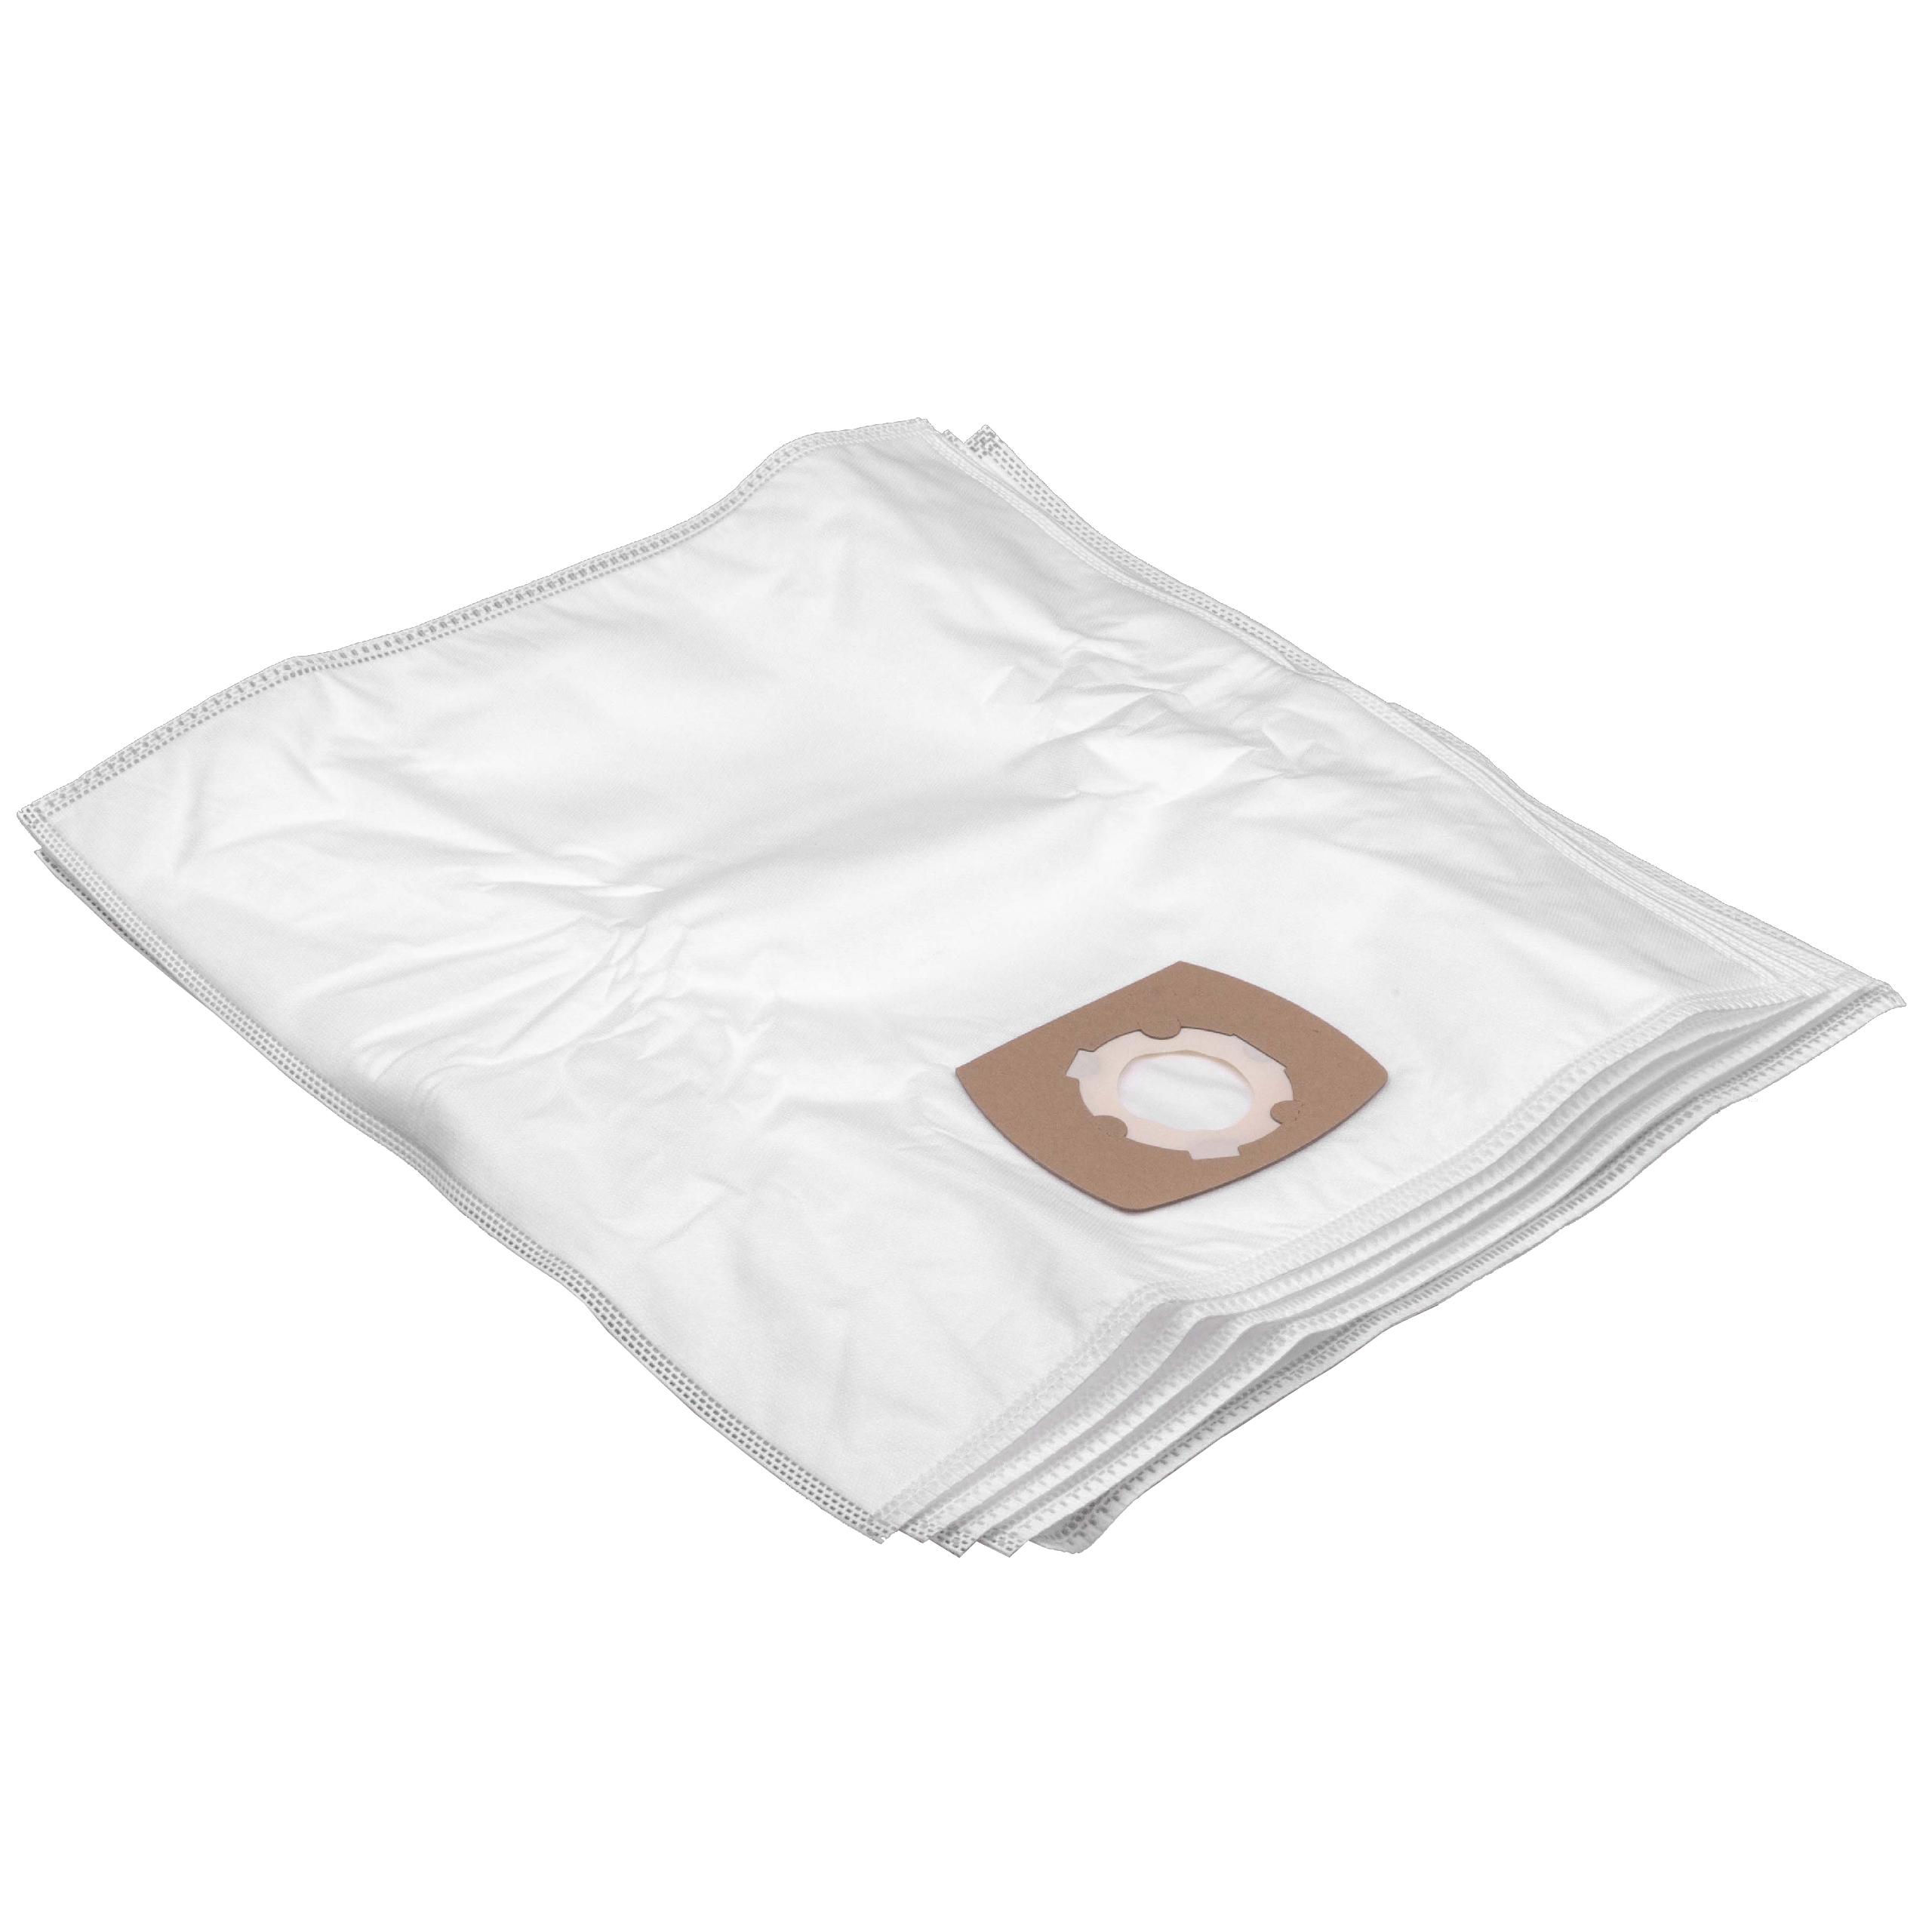 5x Staubsaugerbeutel als Ersatz für Grundig Typ G - Hygiene Bag für Satrap Staubsauger u.a. - Mikrovlies